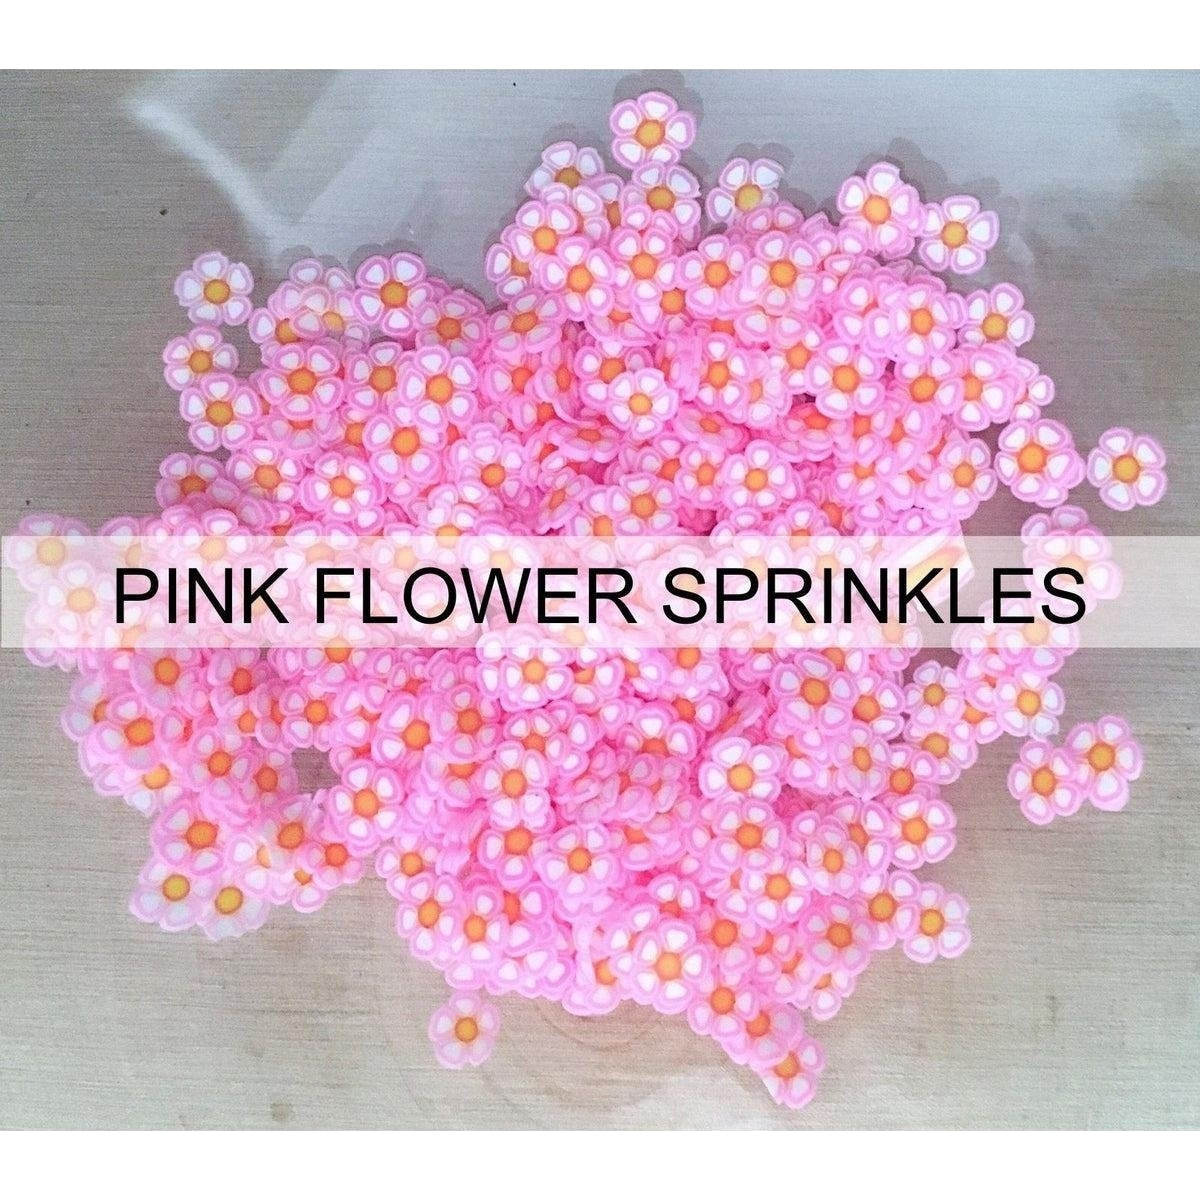 Pink Flower Sprinkles